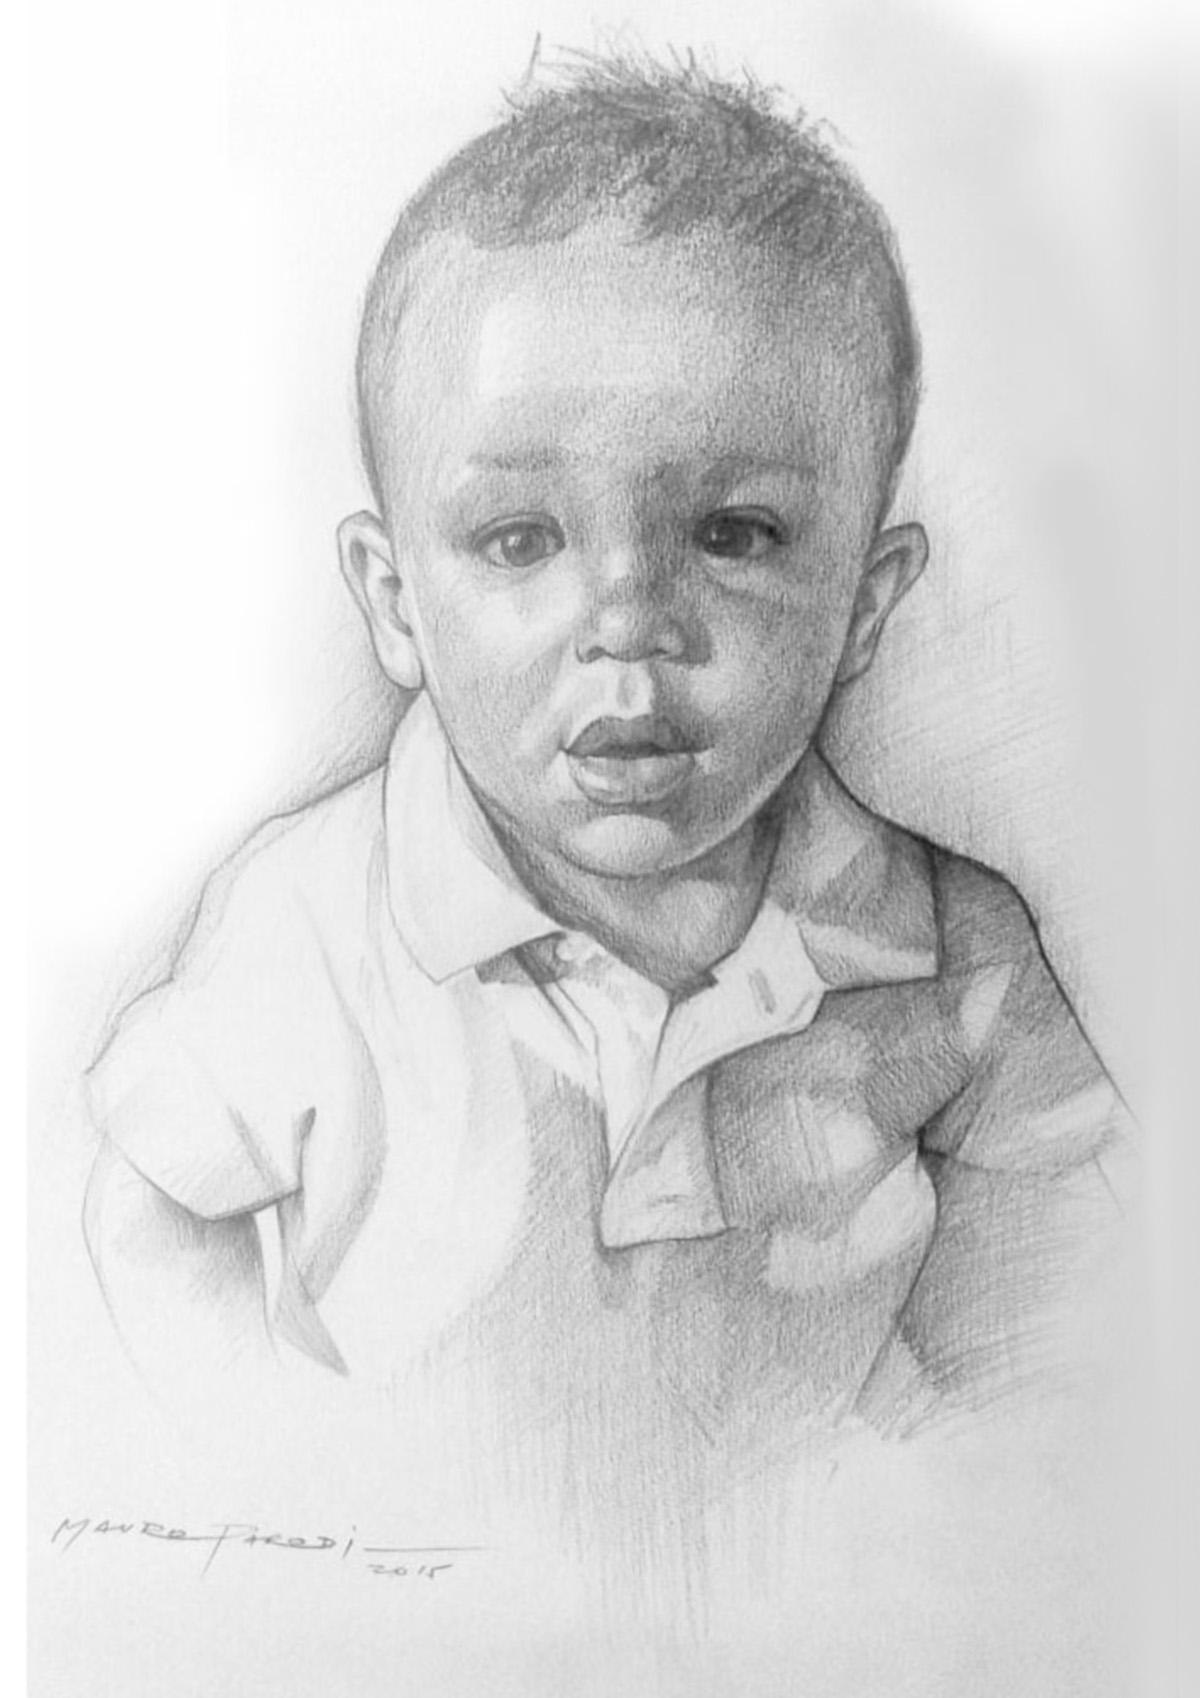 Retrato de un niño realizado por Mauro Parodi